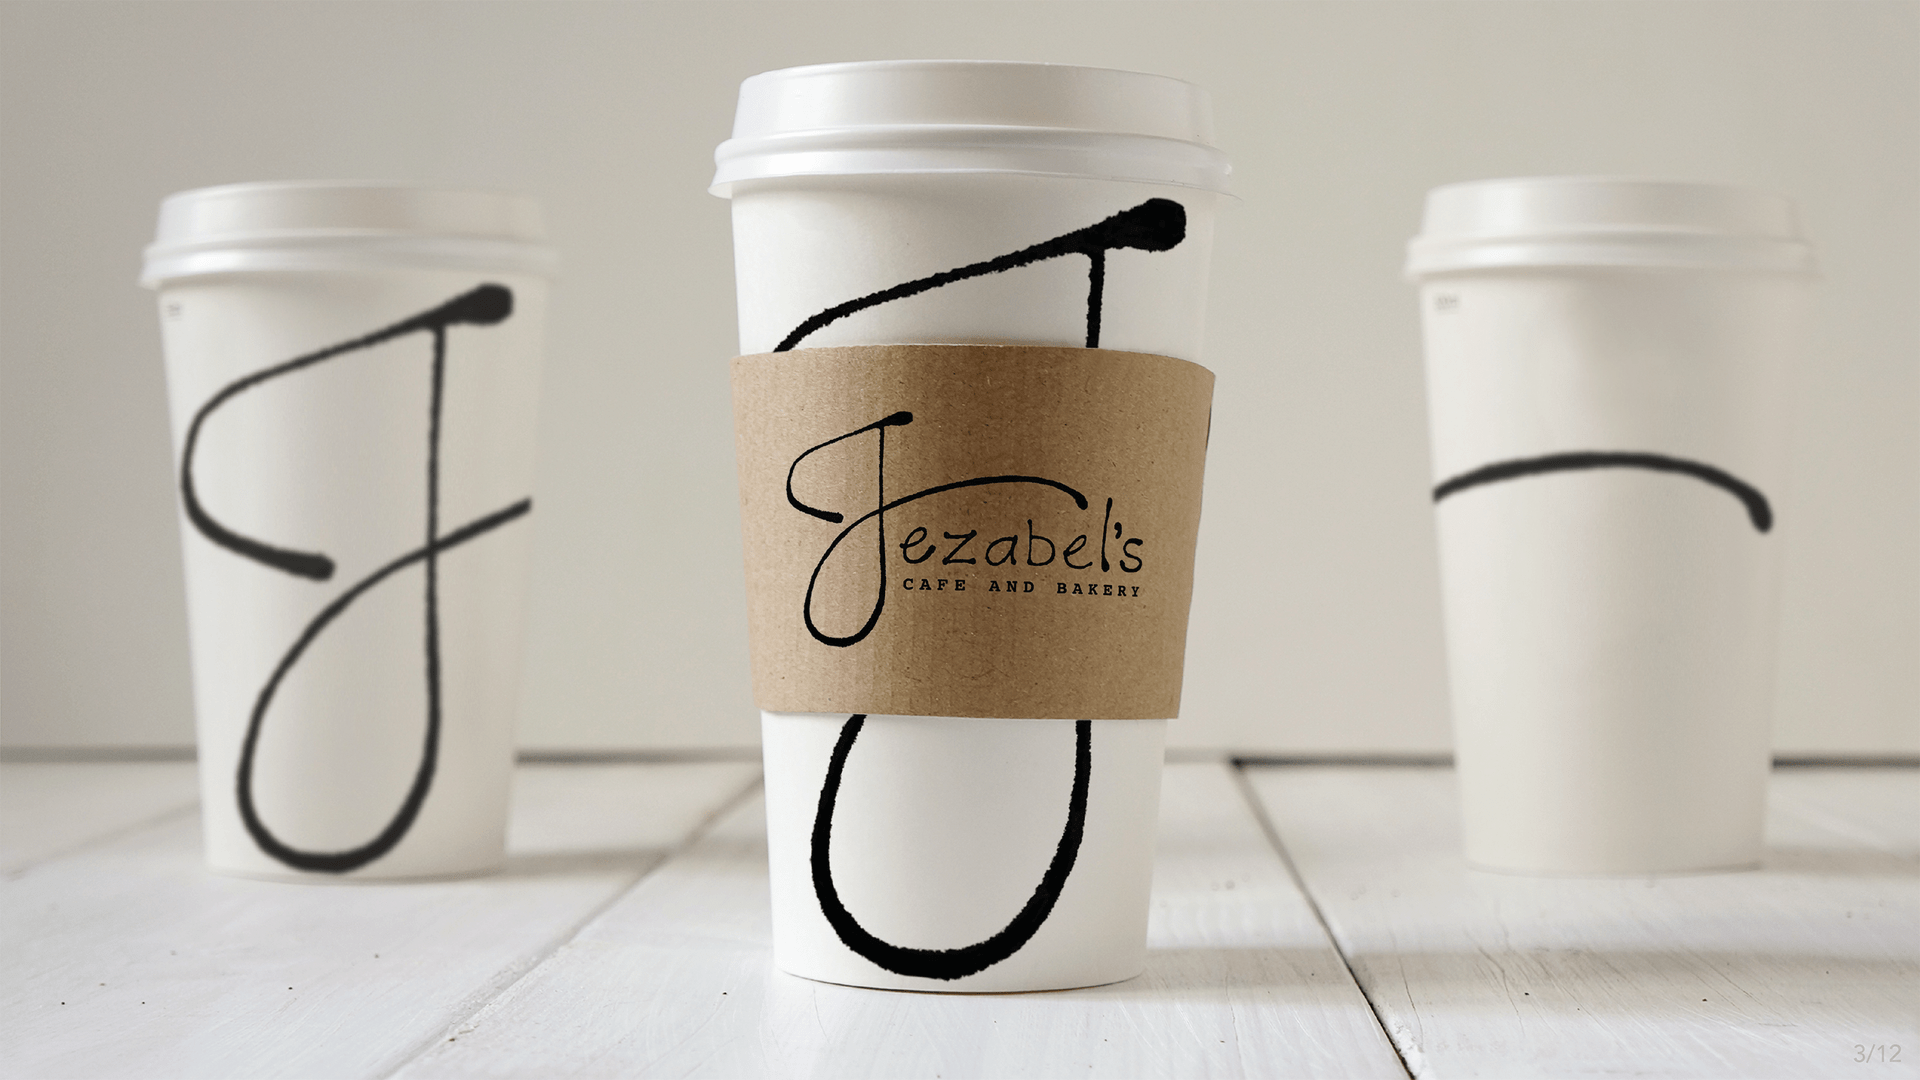 Jezabel's Cafe